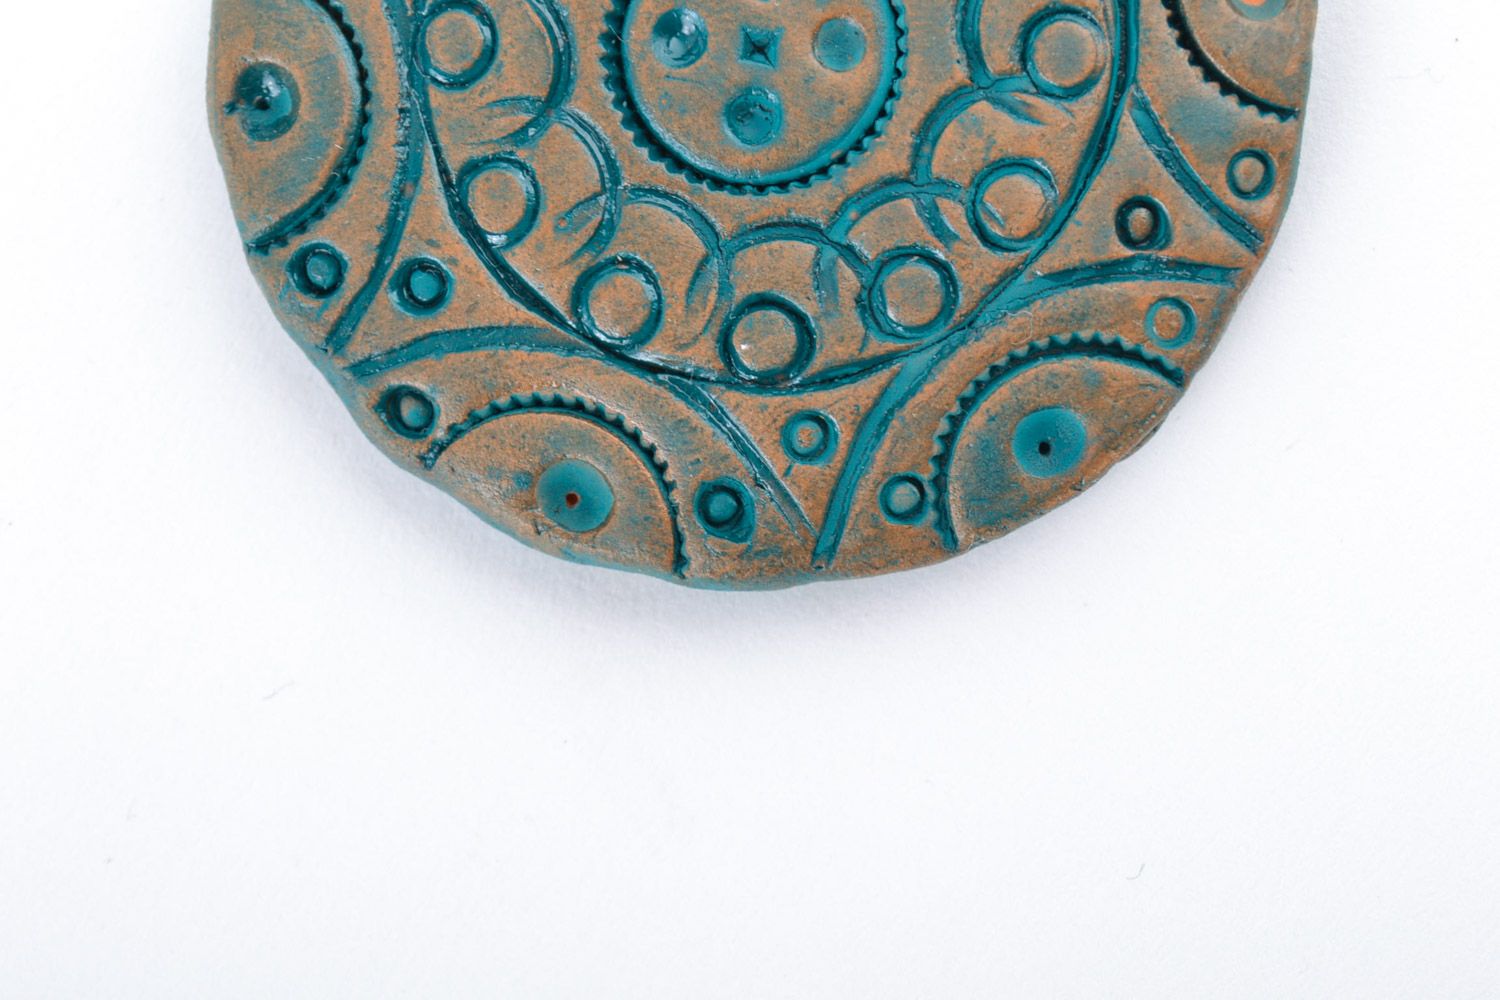 Плоский глиняный кулон большой с узорами расписанный акрилом ручной работы фото 3